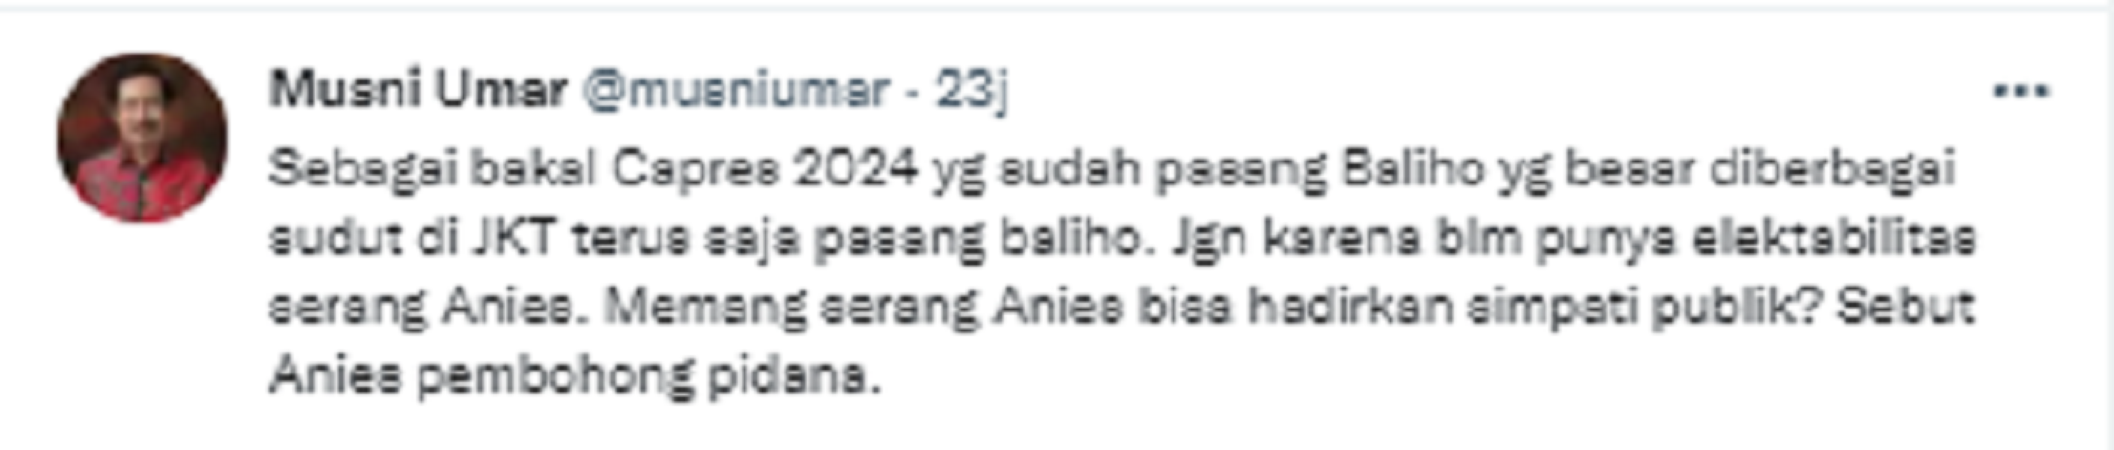 Musni Umar menanggapi pernyataan Plt Ketum DPP PSI, Giring yang menyebut Gubernur DKI Jakarta, Anies Baswedang sebagai pembohong.*